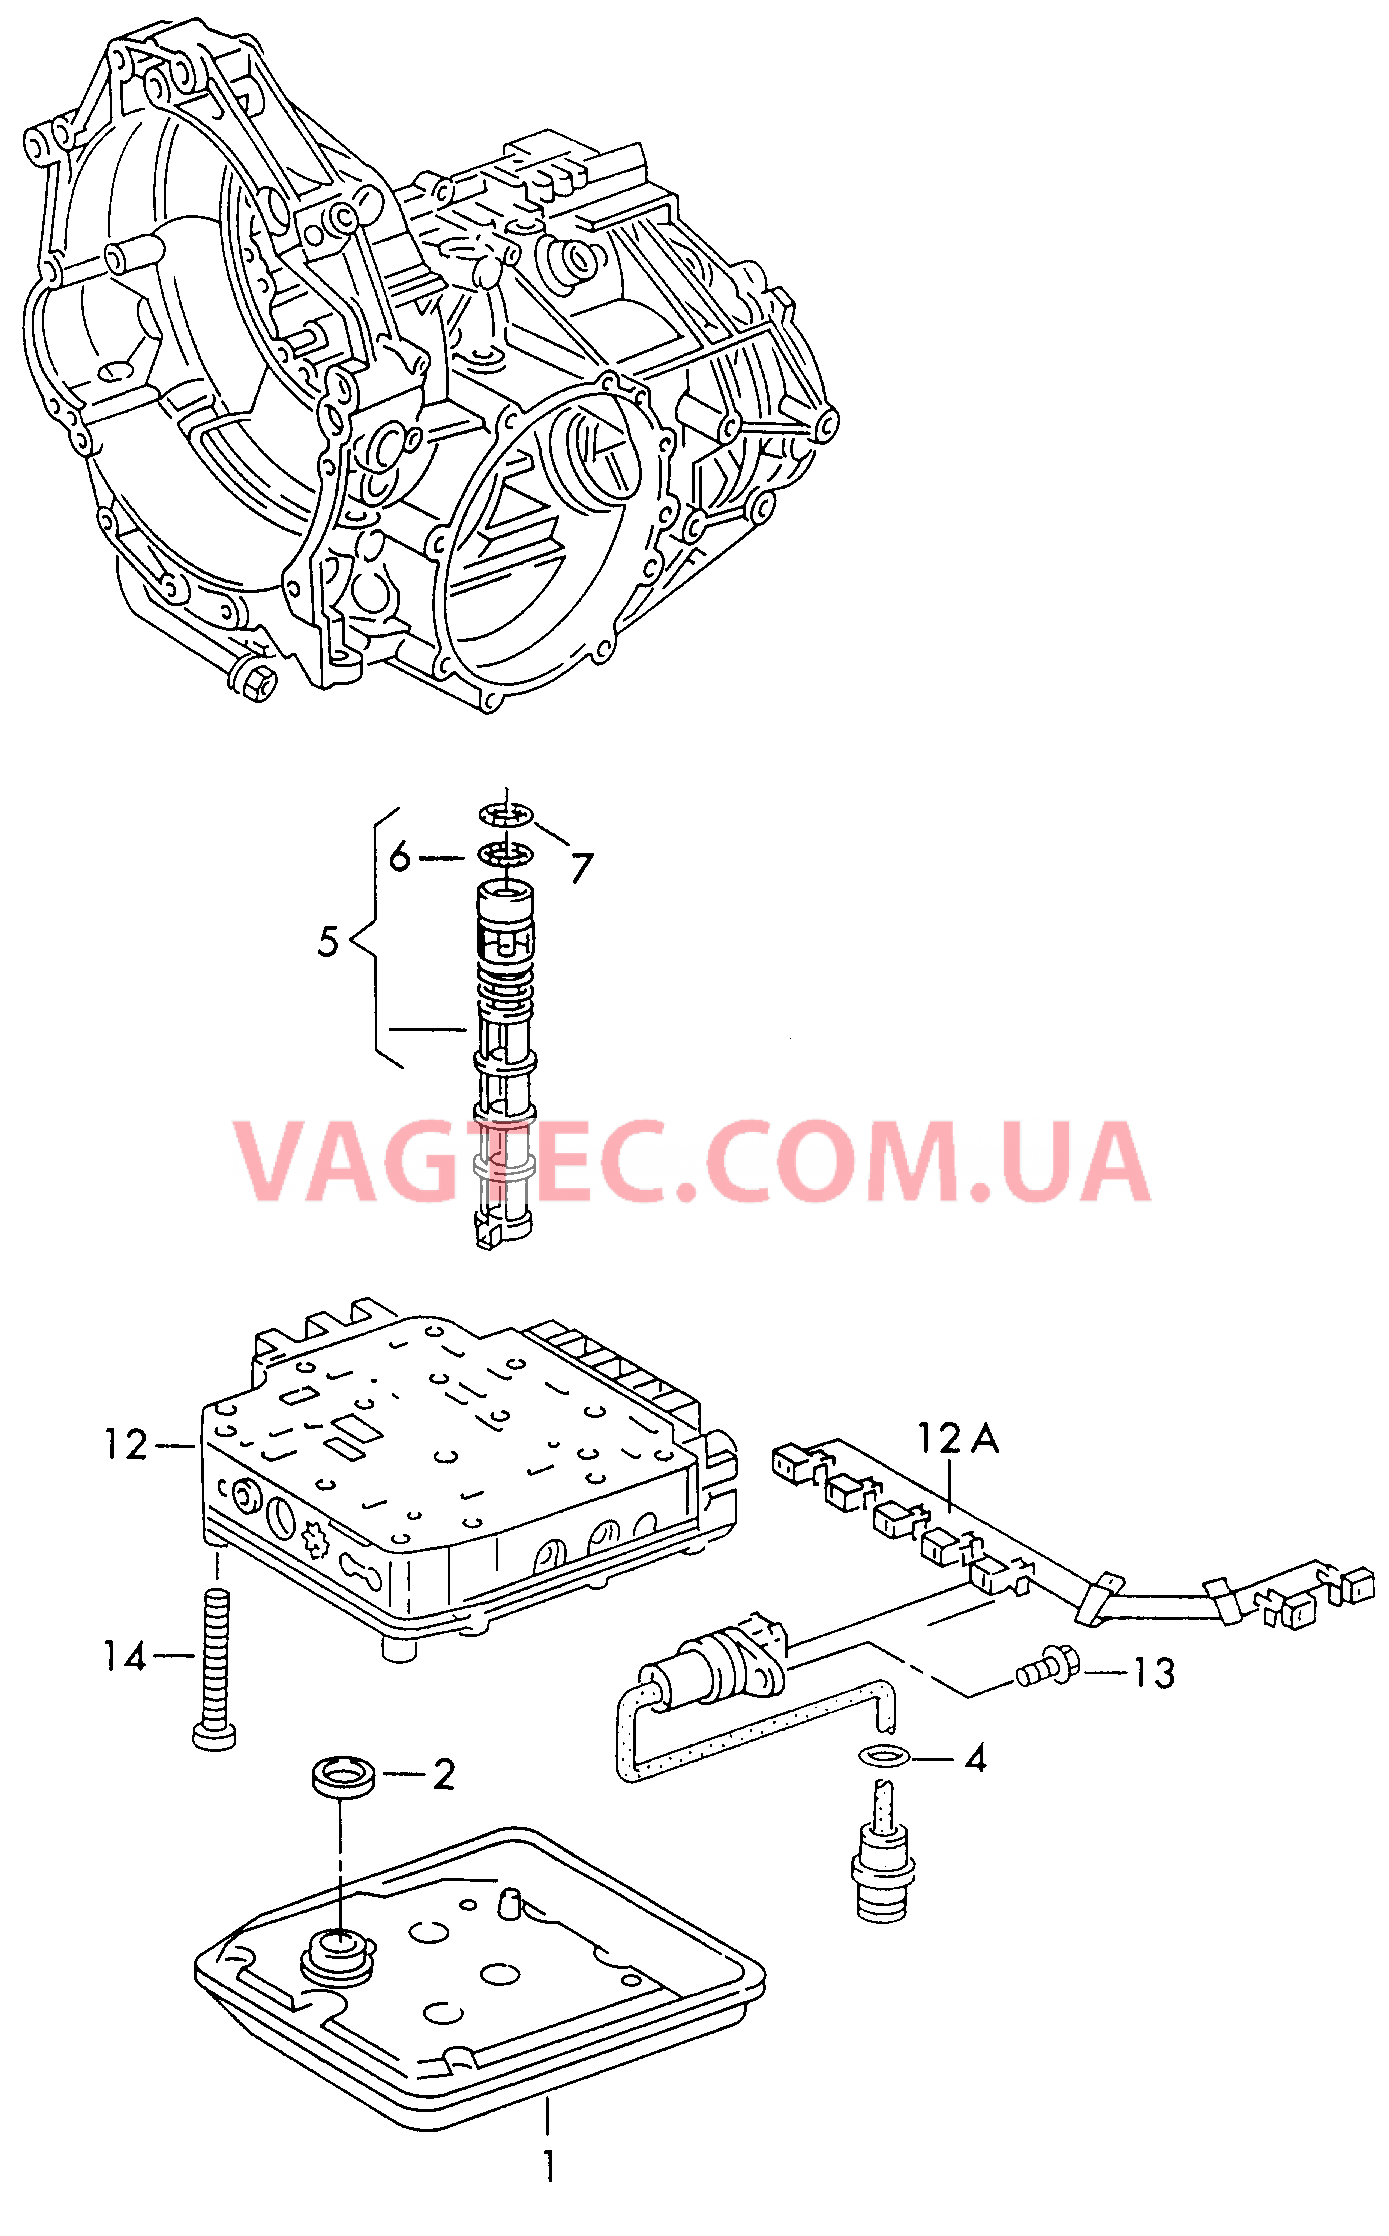 Блок клапанов АКП Фильтр масляный, сетчатый для 4-ступенчатой АКП  для VOLKSWAGEN Passat 2003